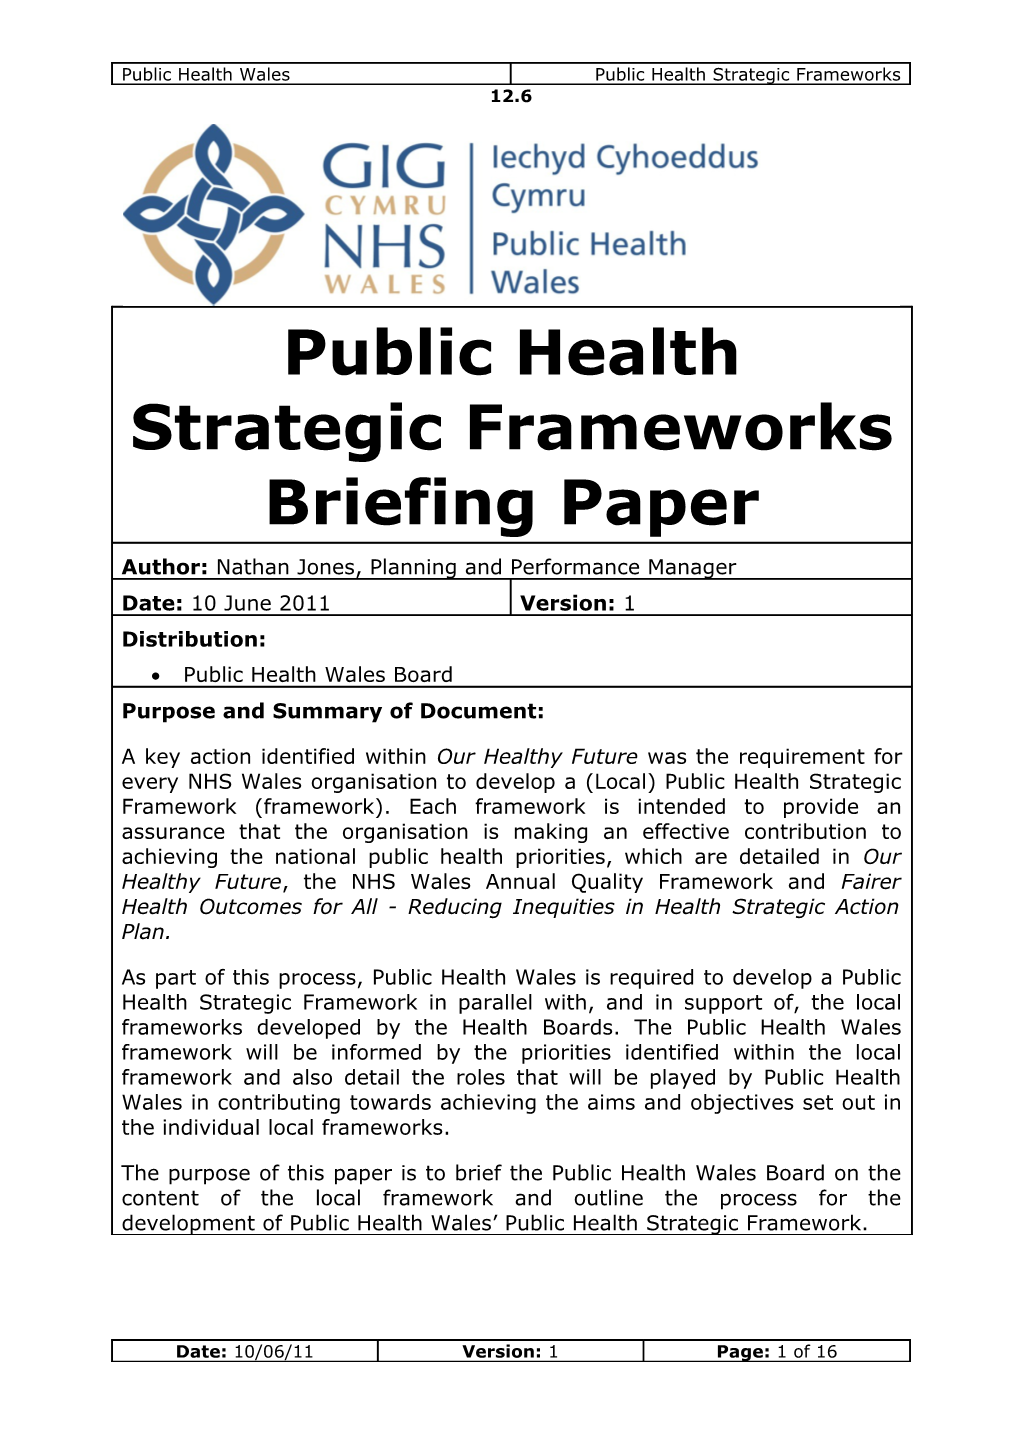 Public Health Wales Board